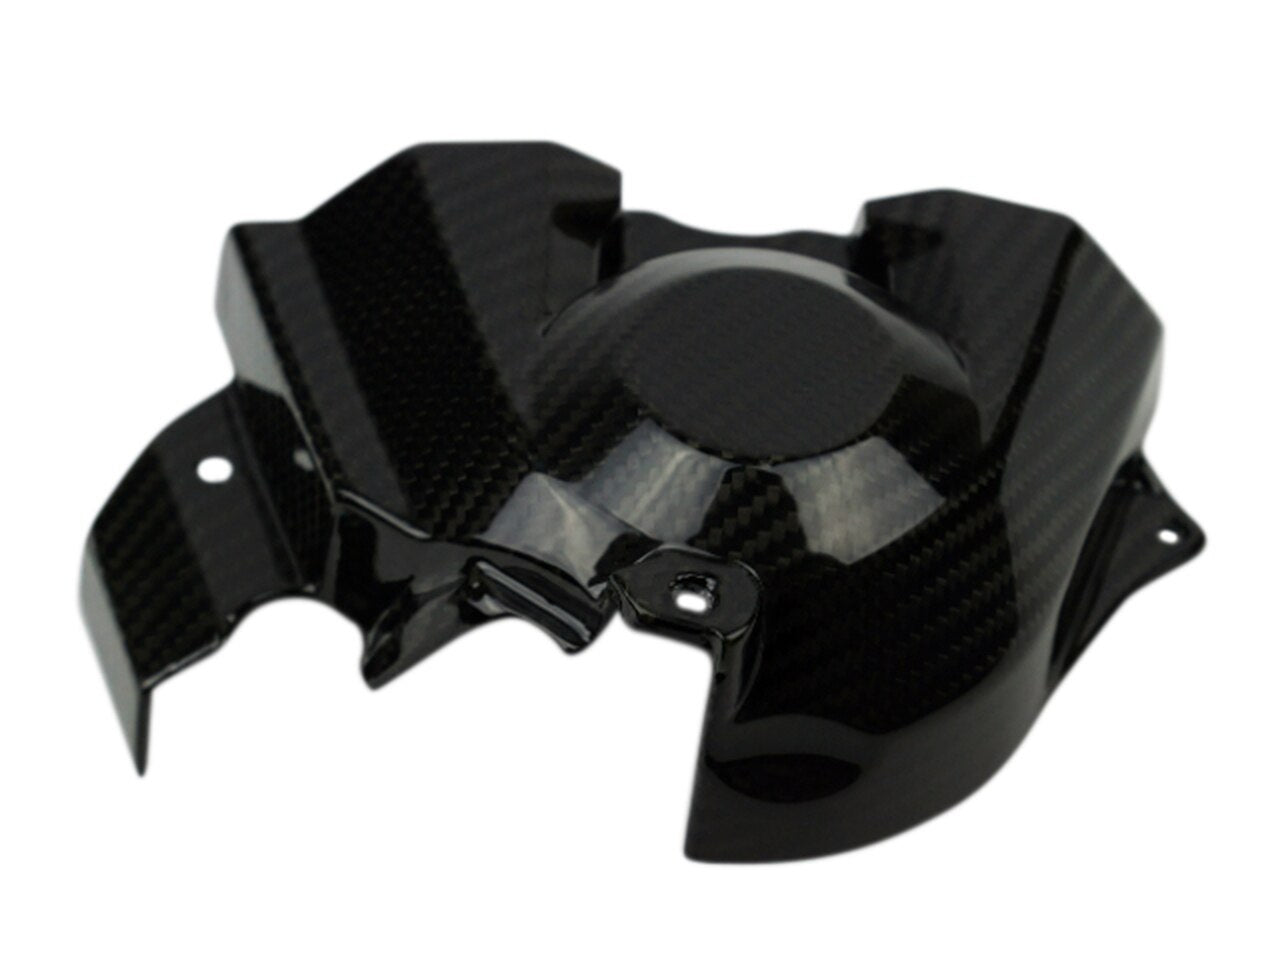 Motocomposites Sprocket Cover in 100% Carbon Fiber for Kawasaki Ninja H2